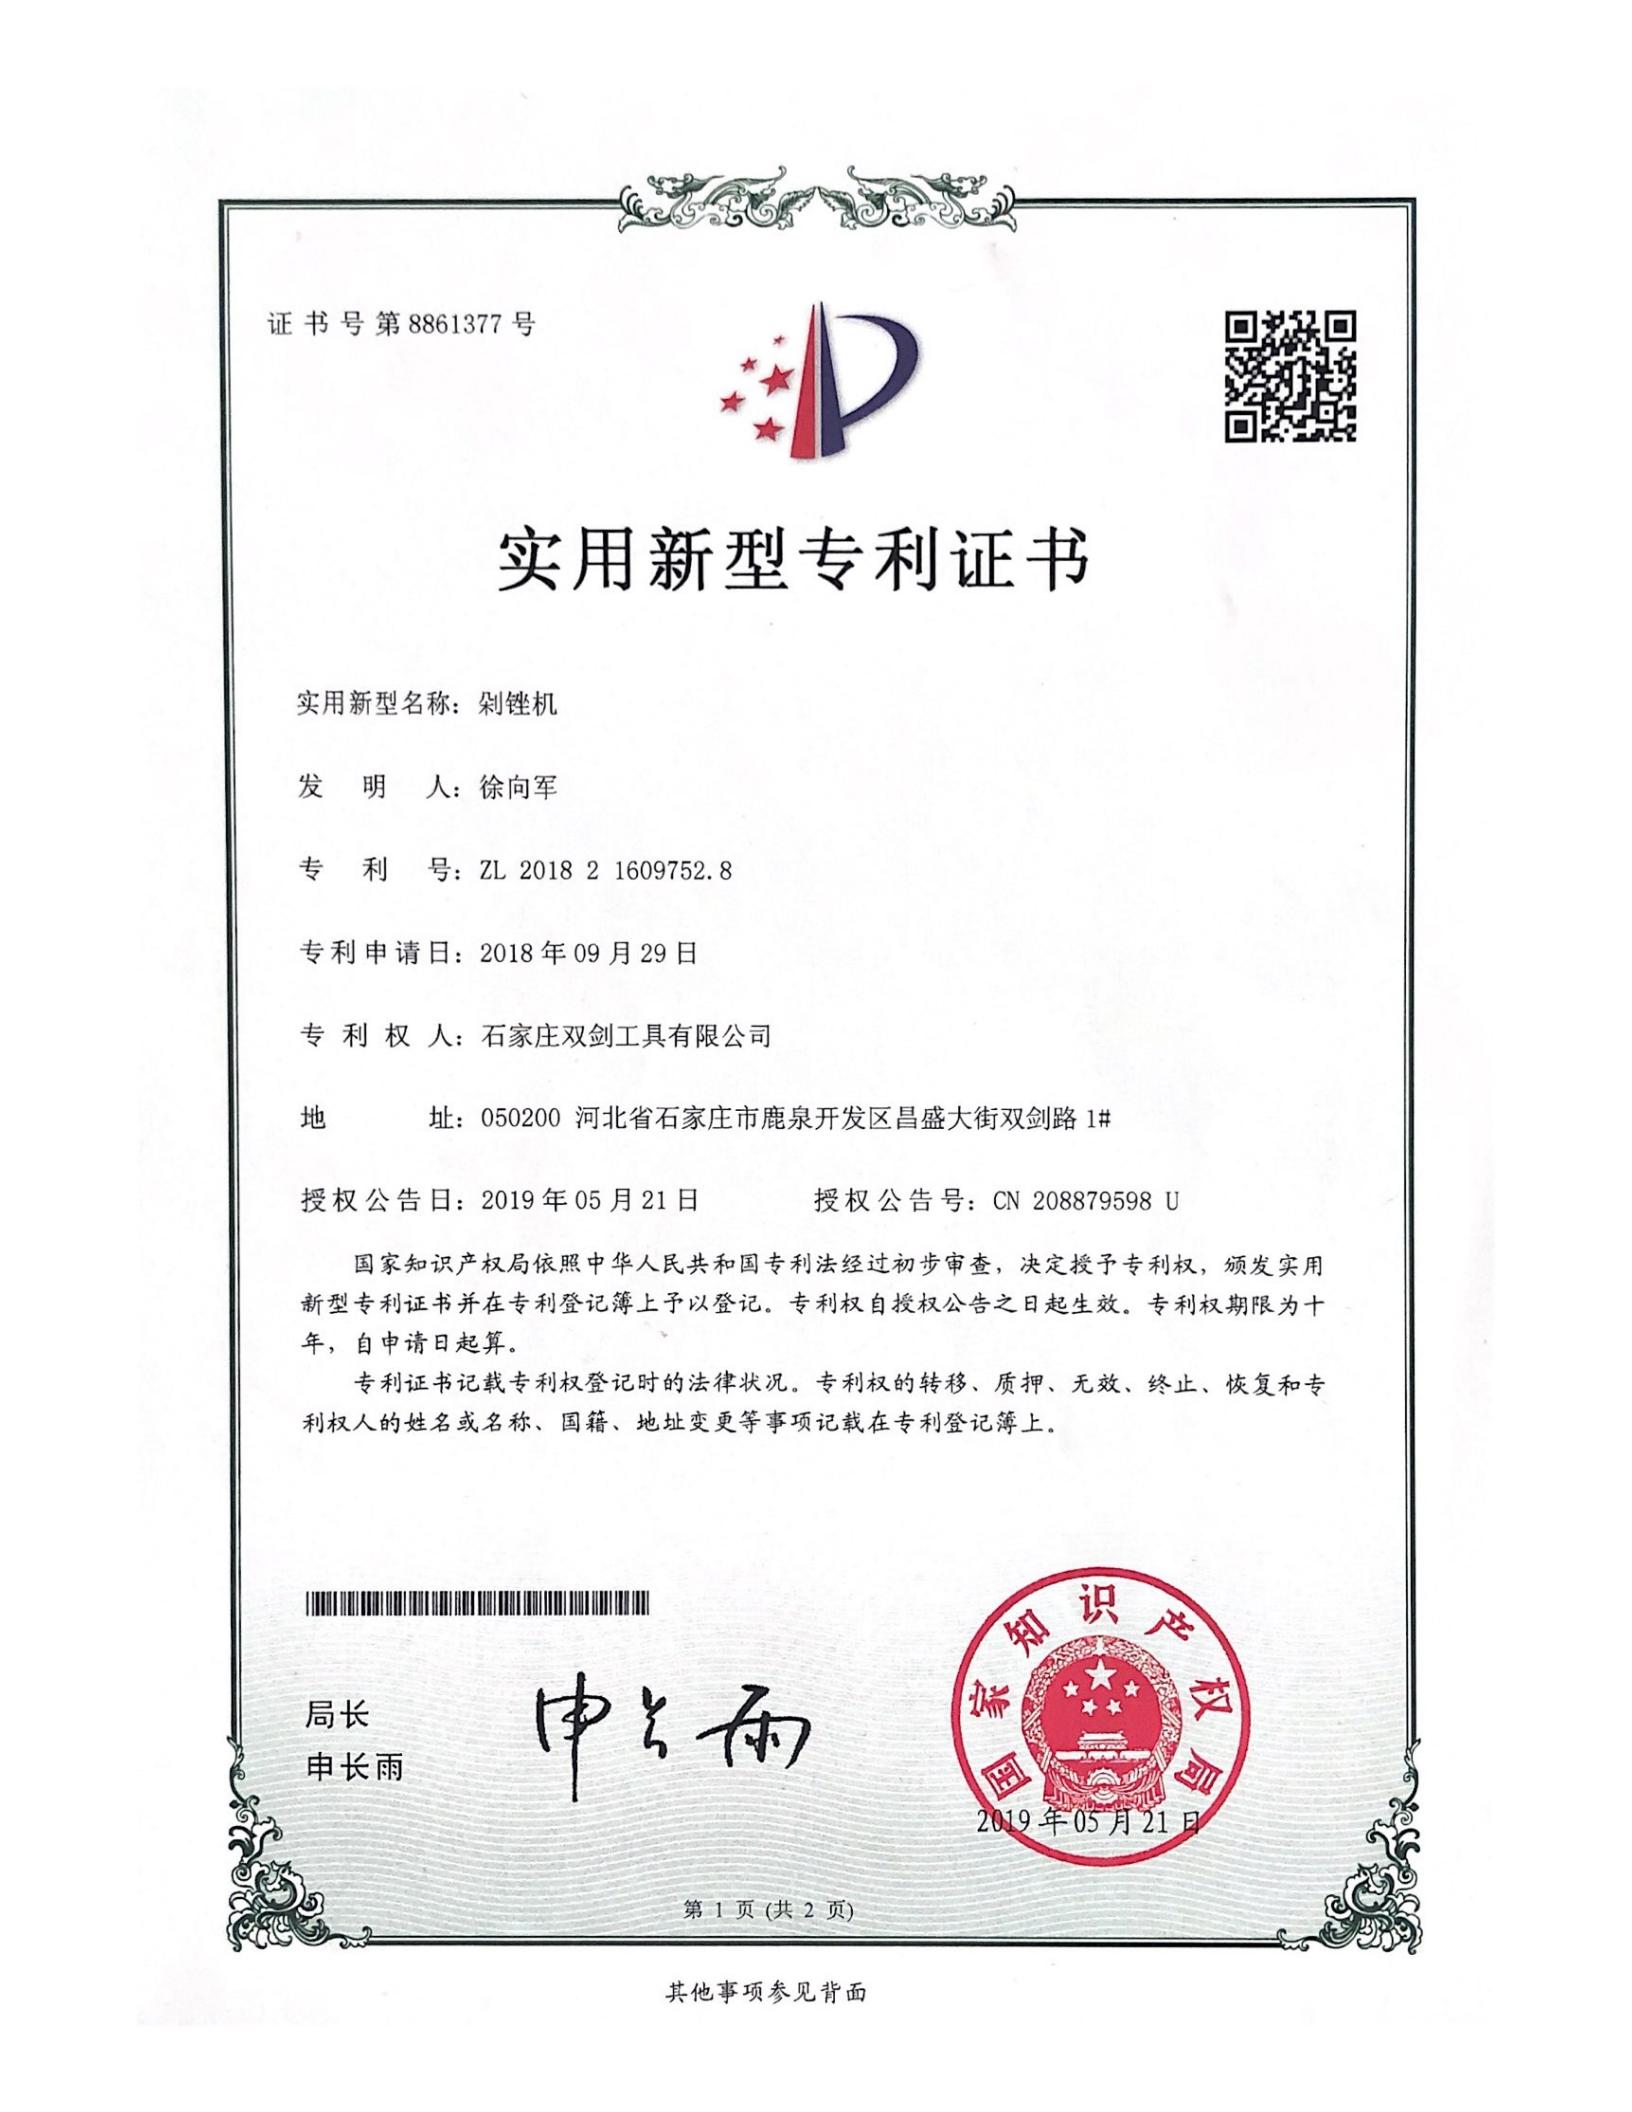 Certificado de patente de modelo de utilidad No. 8861377